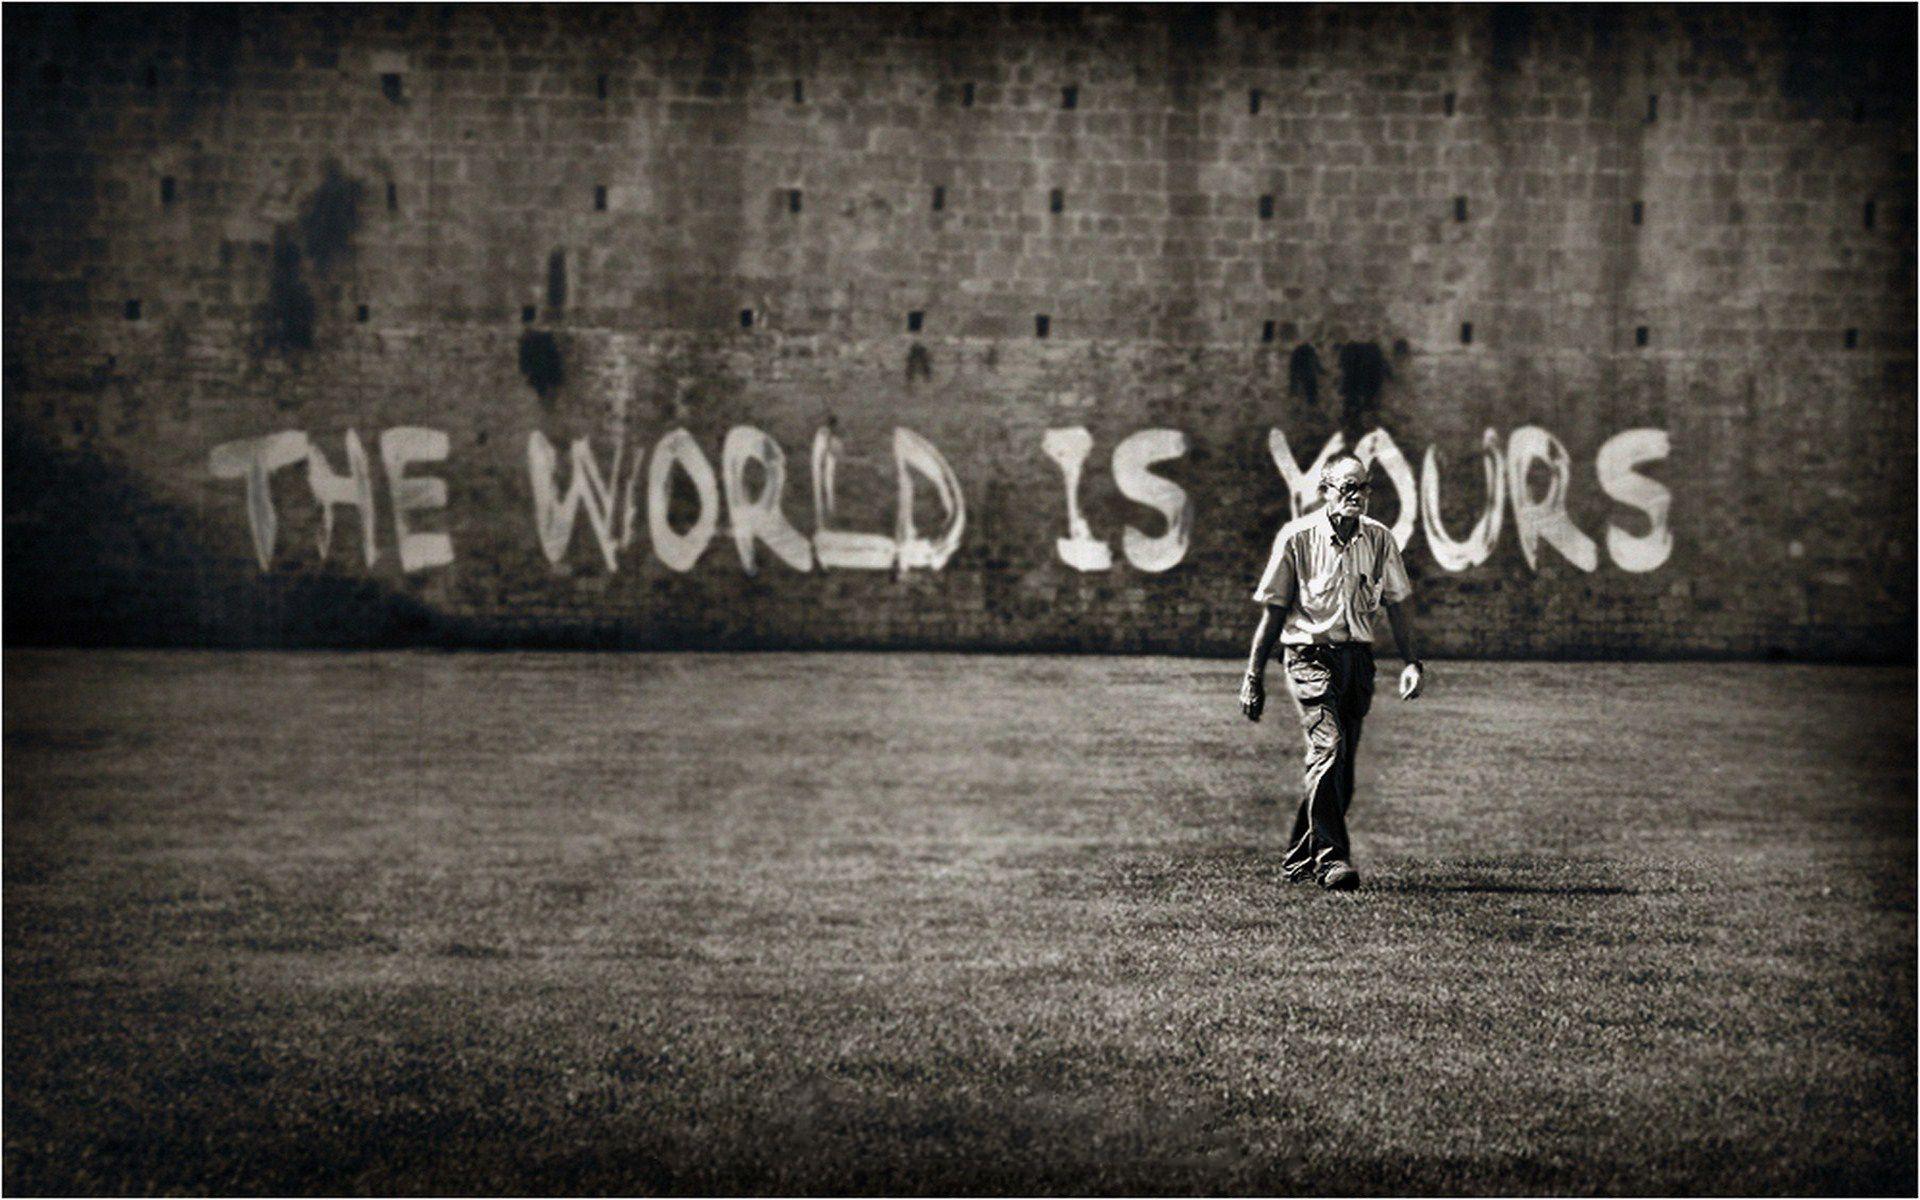 The world is funny. Надписи на стенах. Обои с надписями для стен. Граффити на стене. The World is yours надпись.